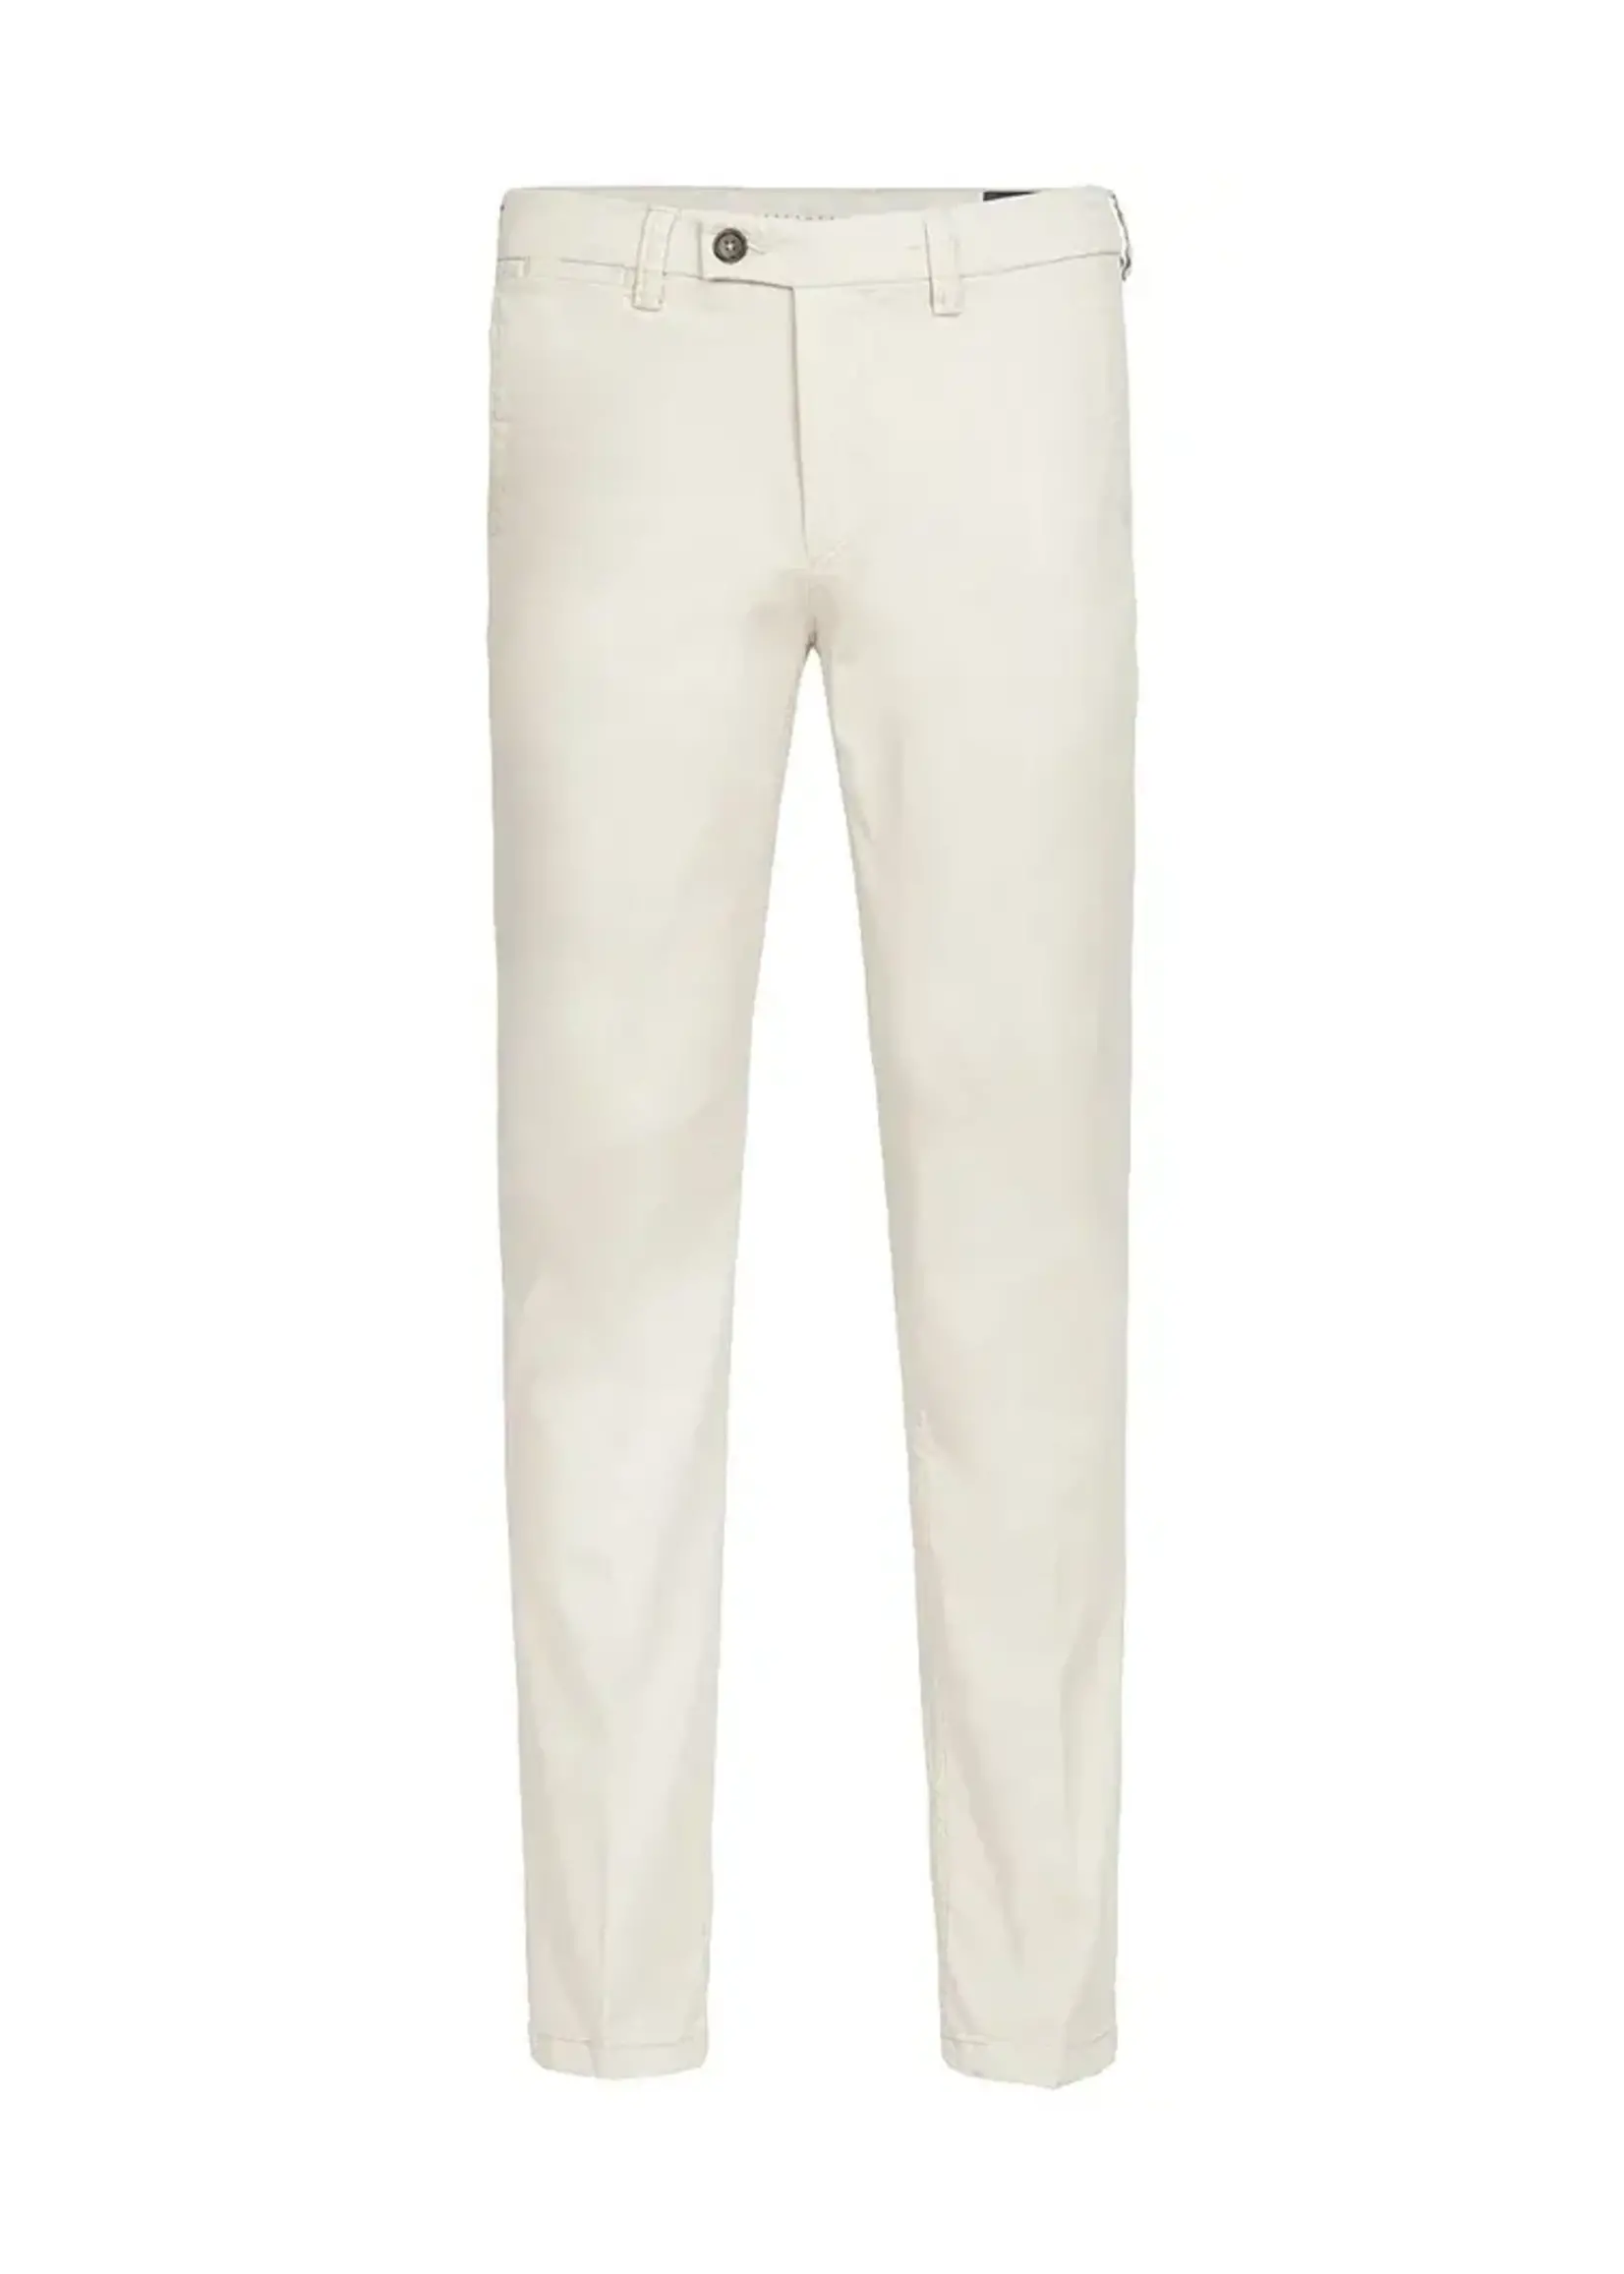 Profuomo trouser chino off white 33/34